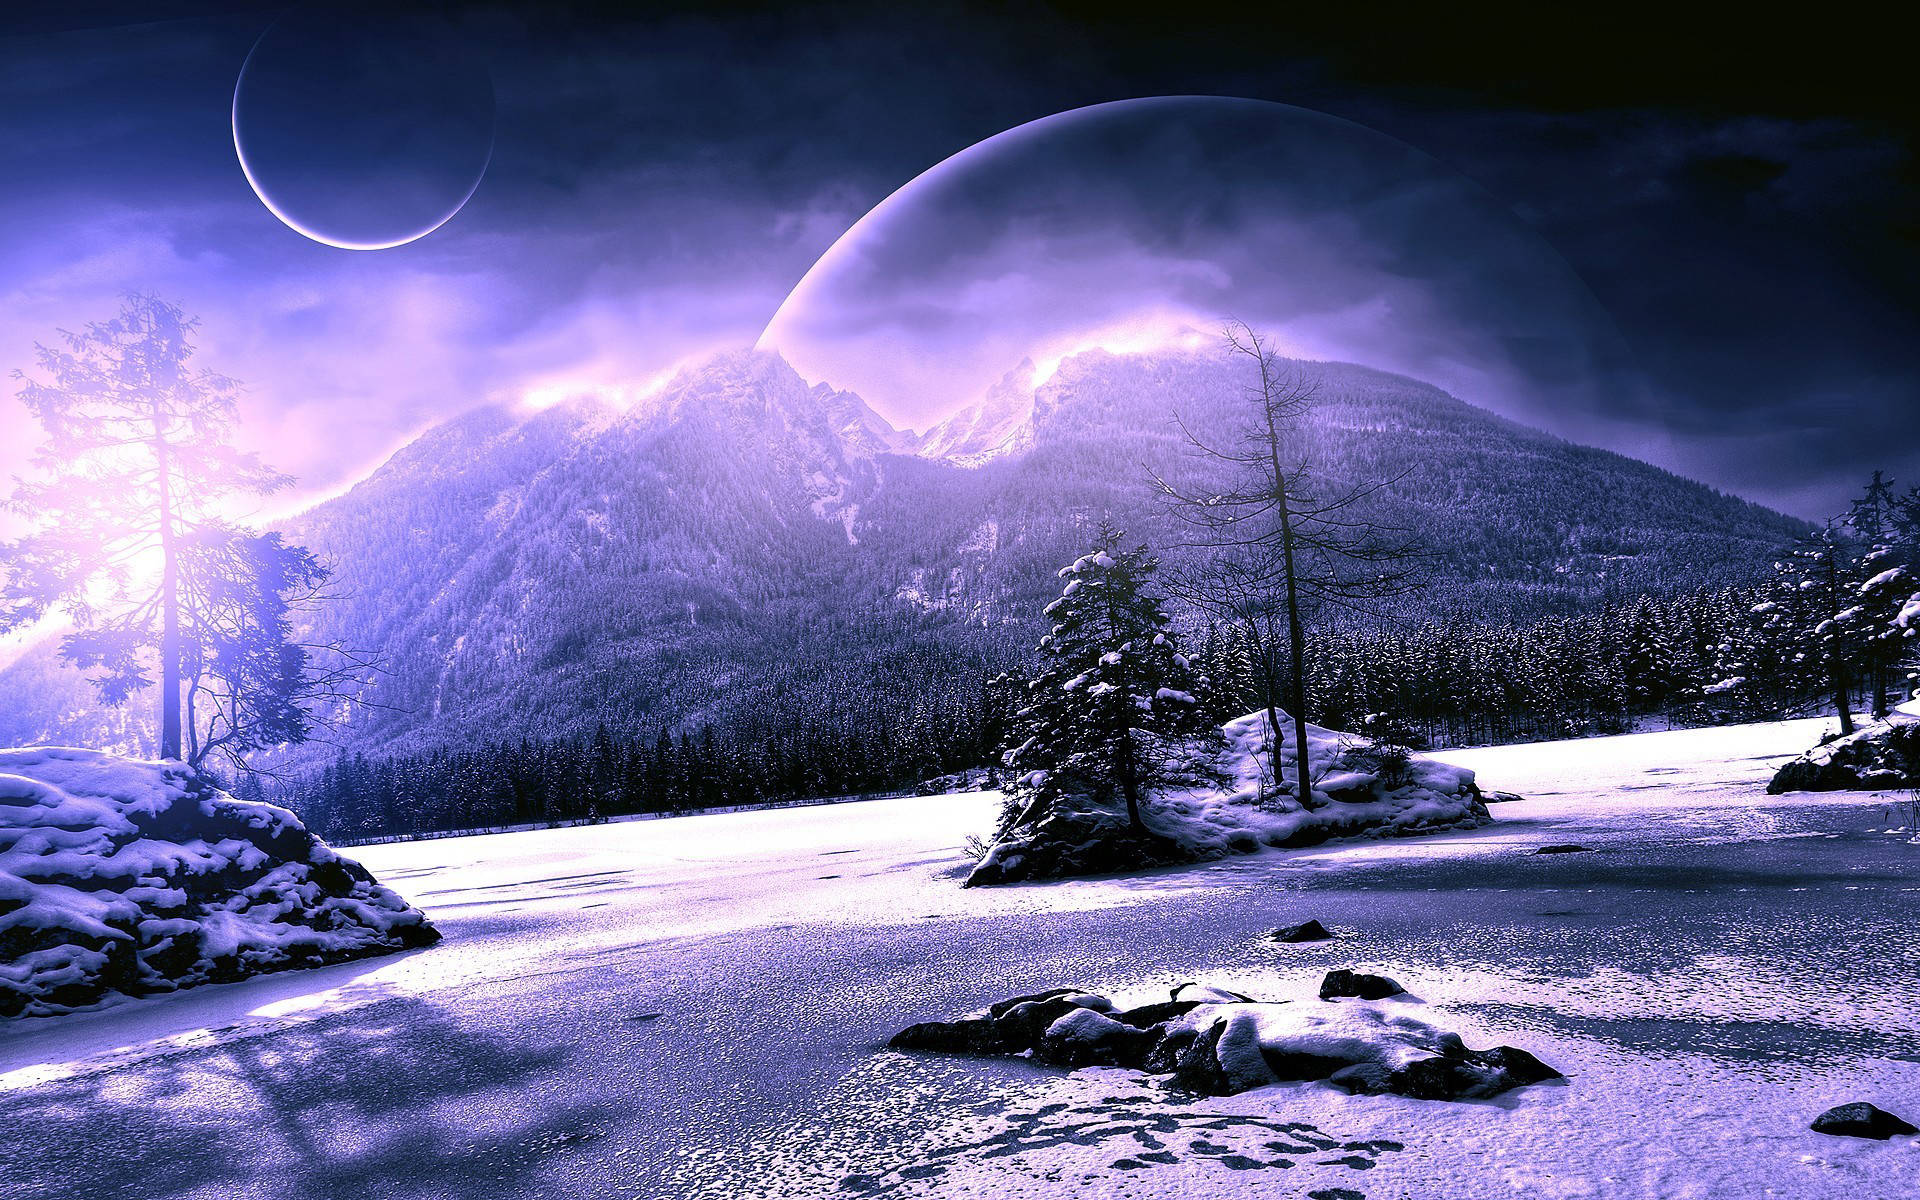 Purple Planet Winter Scenery Wallpaper